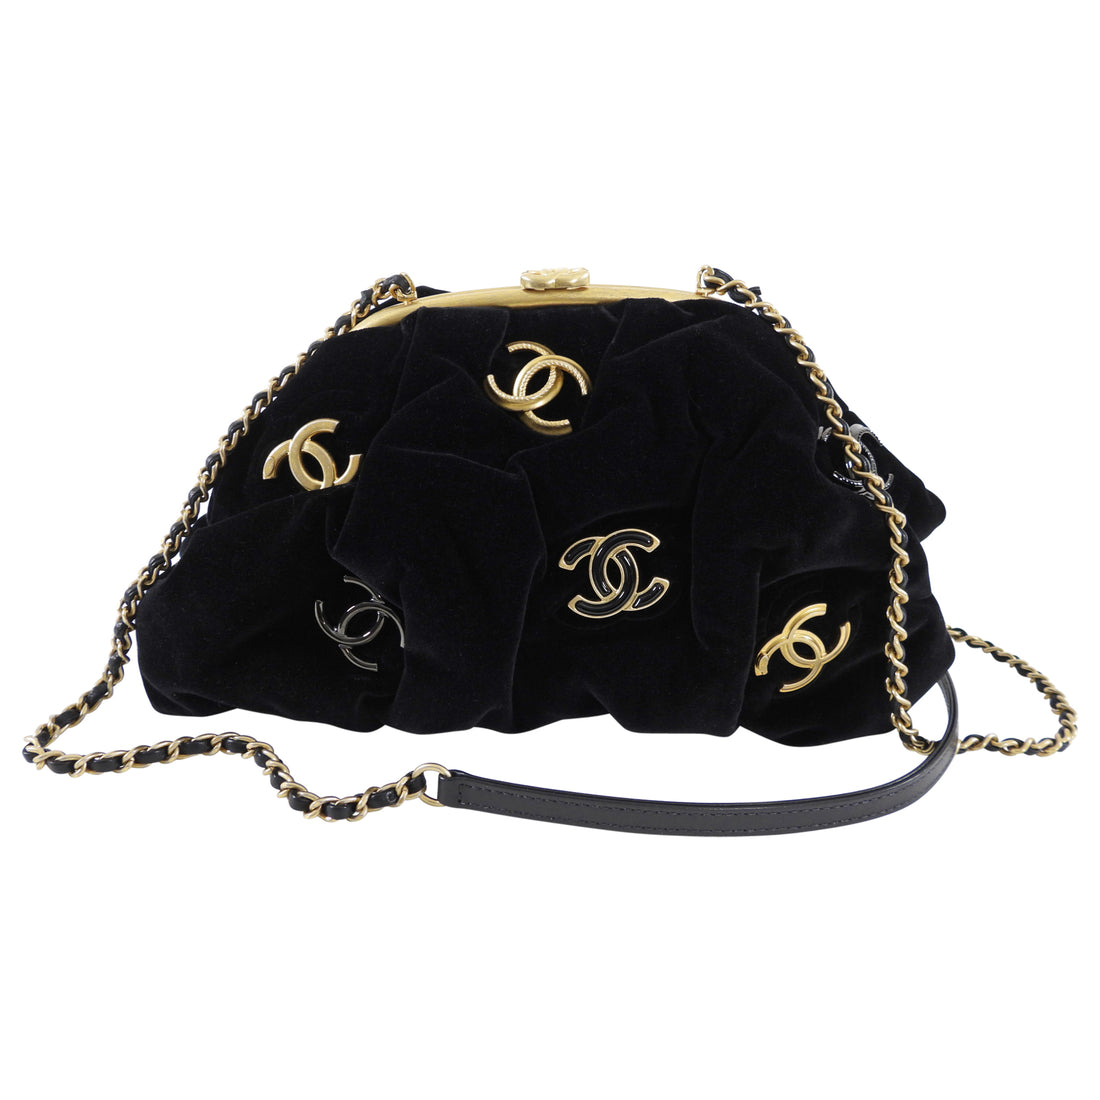 Velvet Handbags - 278 For Sale on 1stDibs